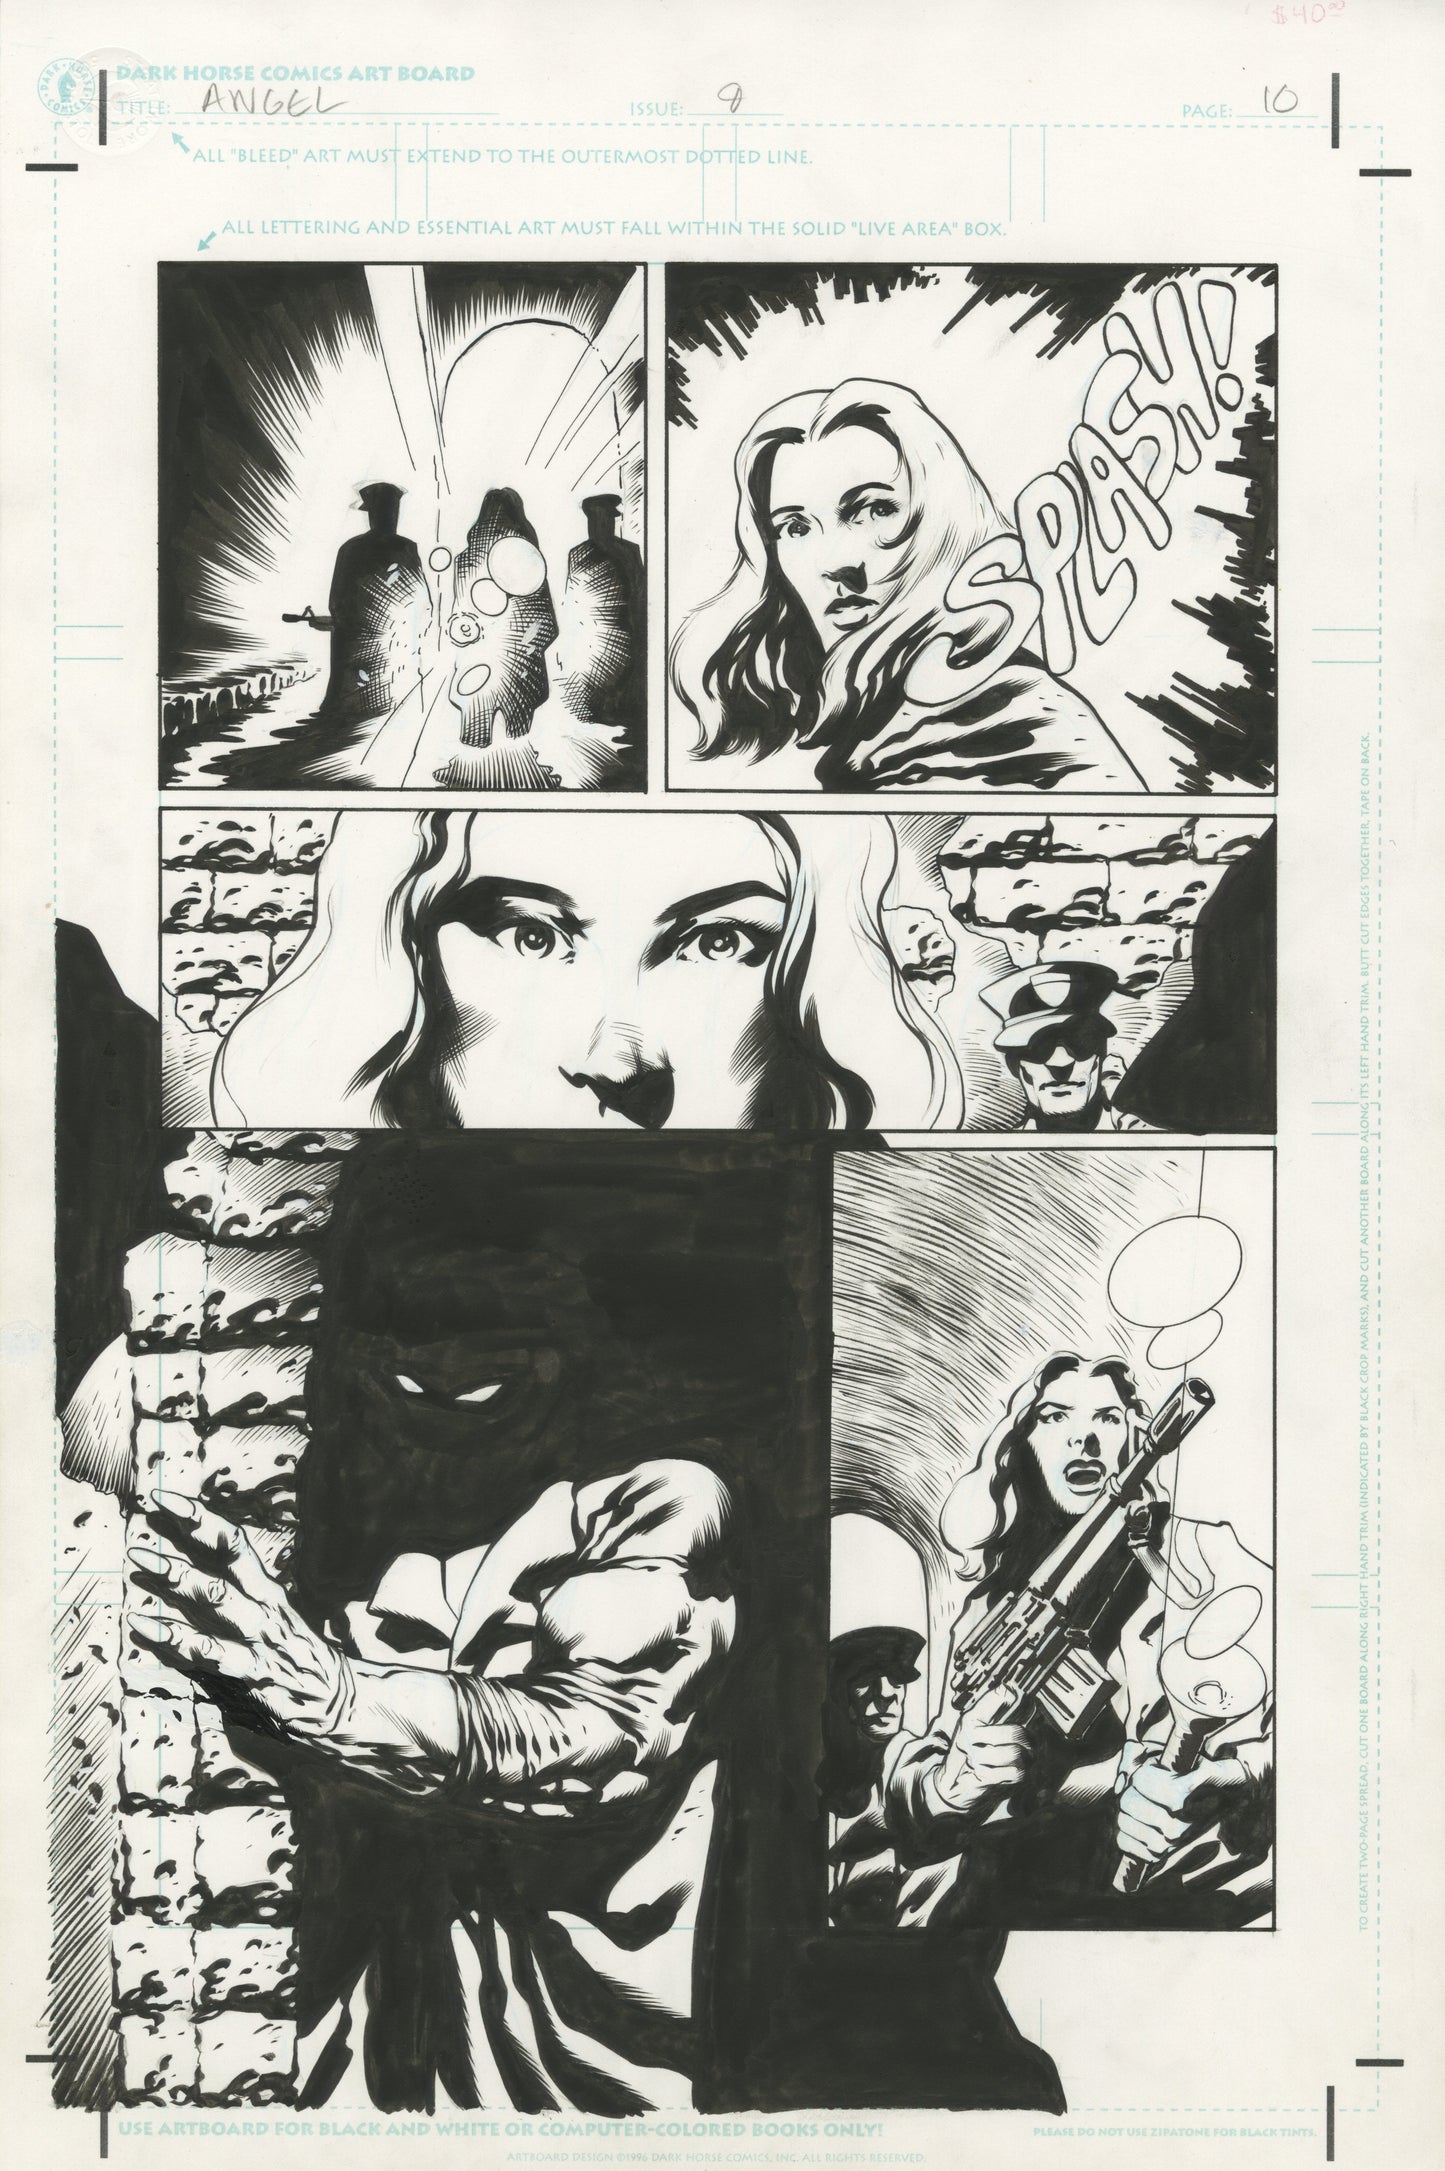 Angel #09, page #10 (2000, Dark Horse)